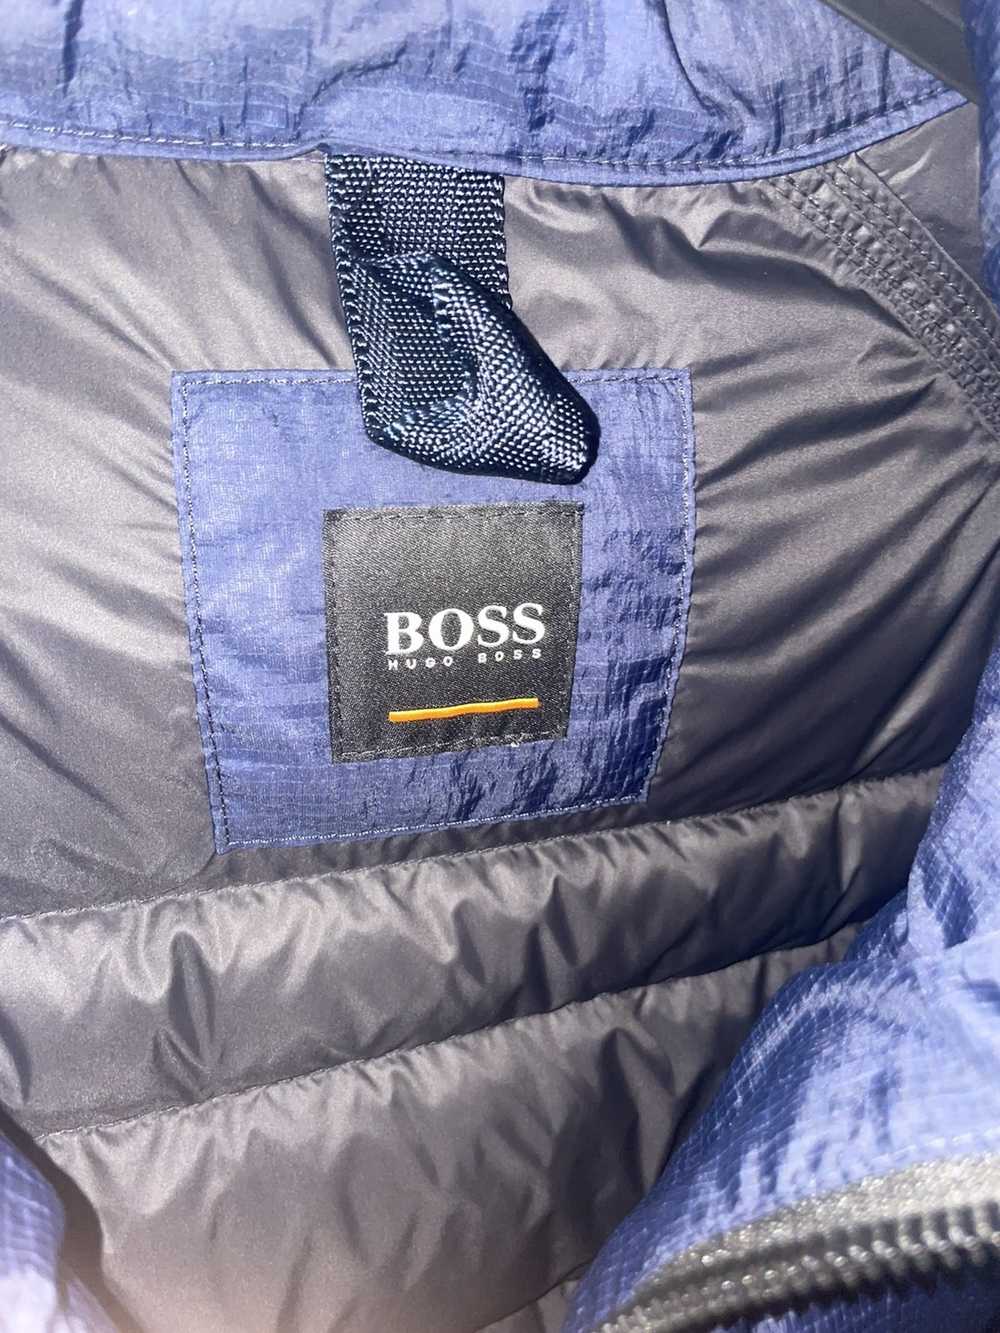 Hugo Boss Hugo Boss Vest - image 3